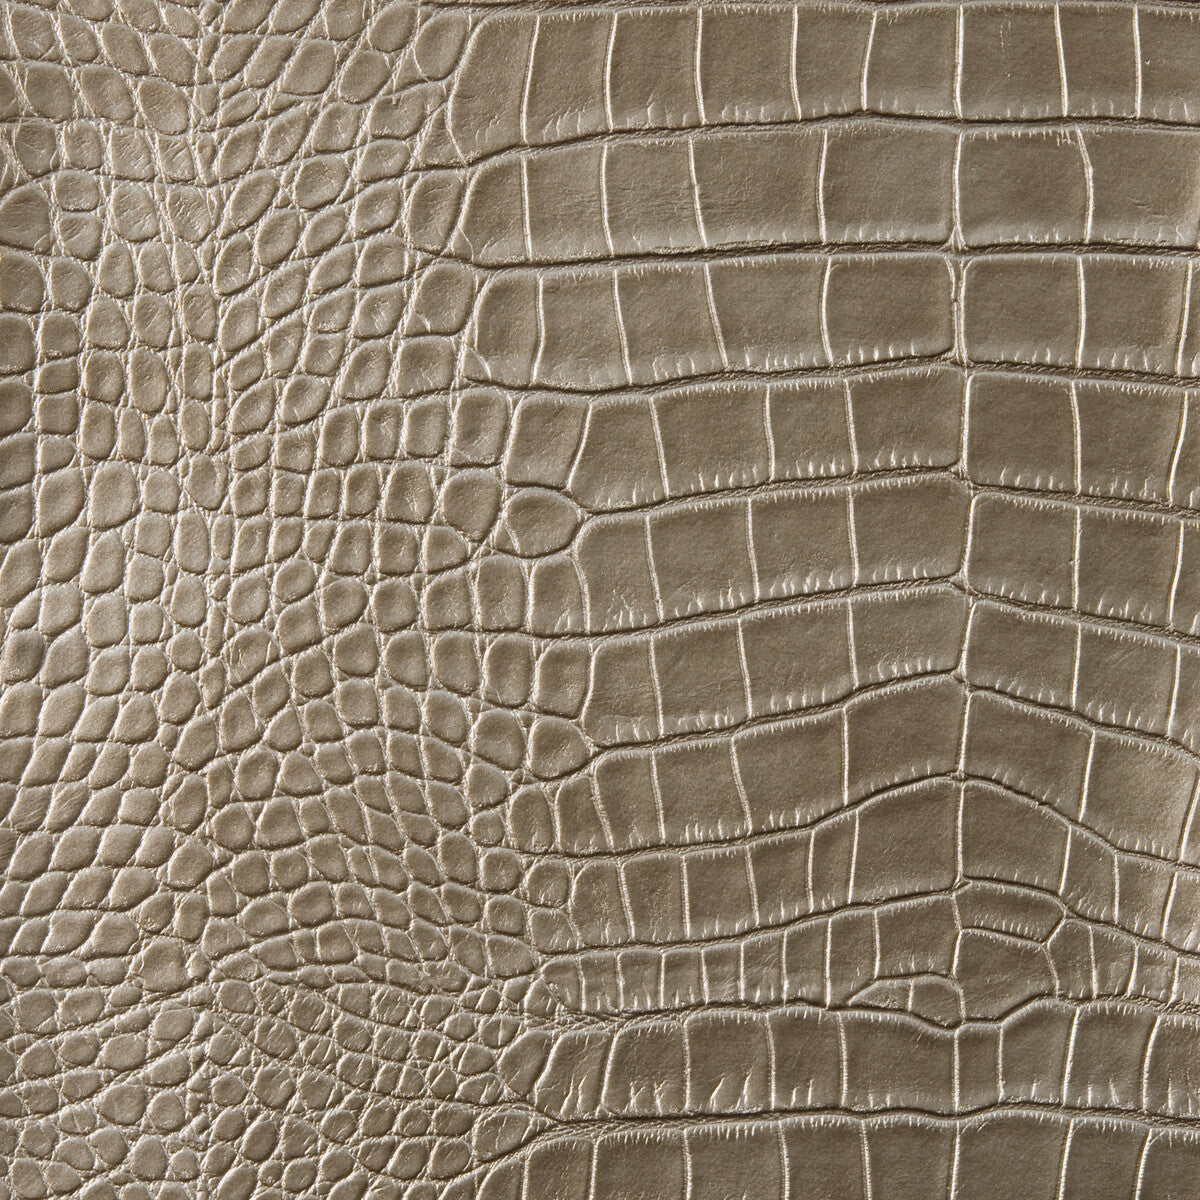 Kravet Design fabric in ankora-414 color - pattern ANKORA.414.0 - by Kravet Design